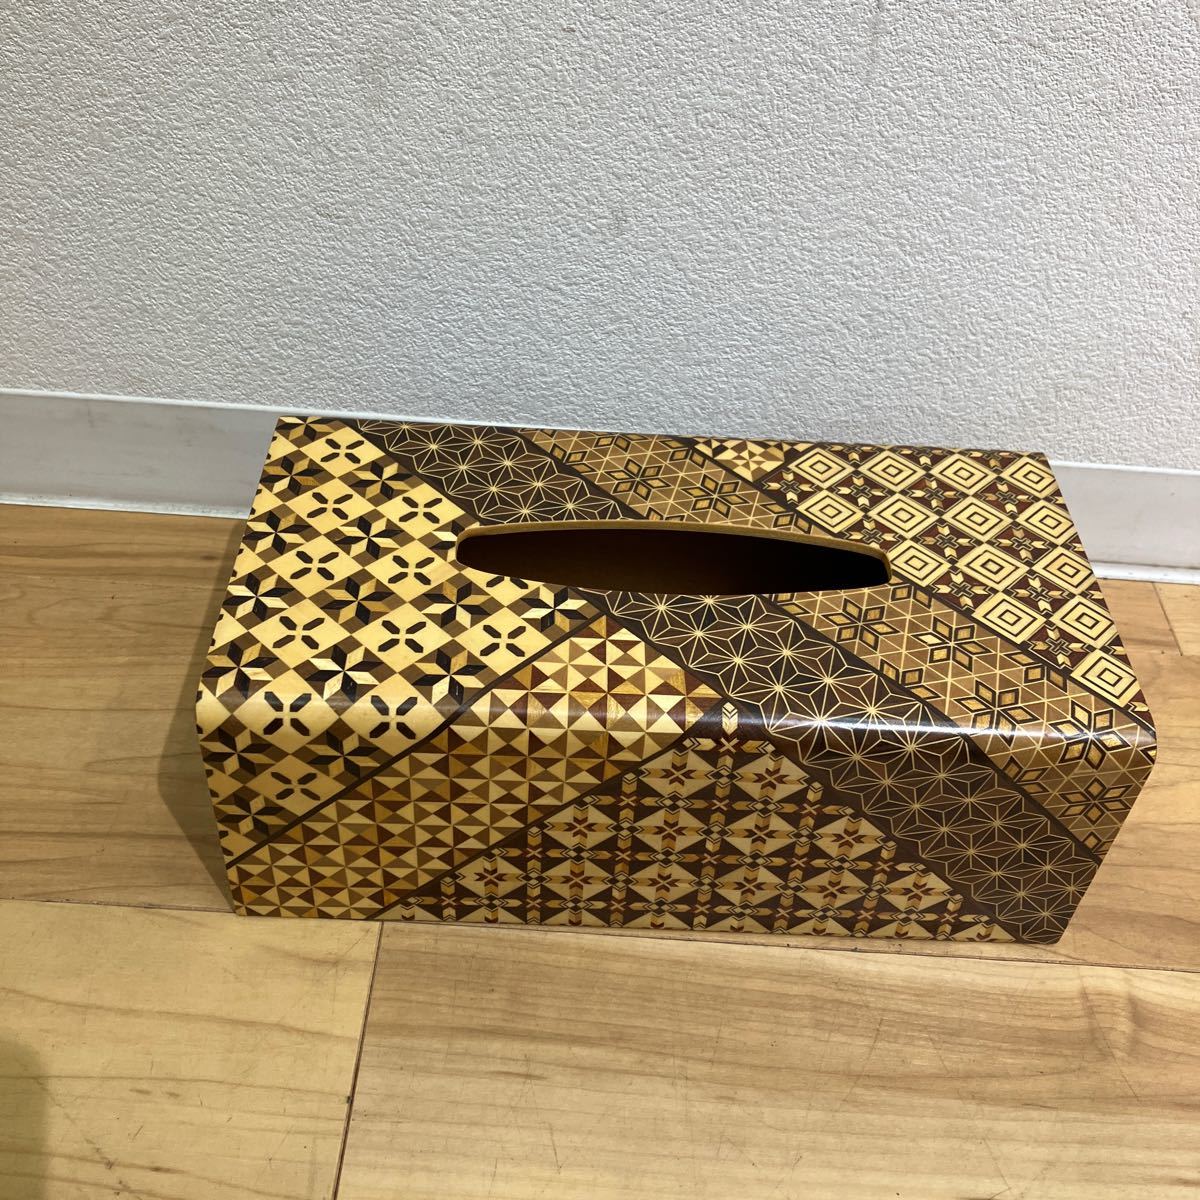 木製 ティッシュボックス 寄木細工 サイズ高さ10cm 横幅27.5cm縦幅14cm _画像1